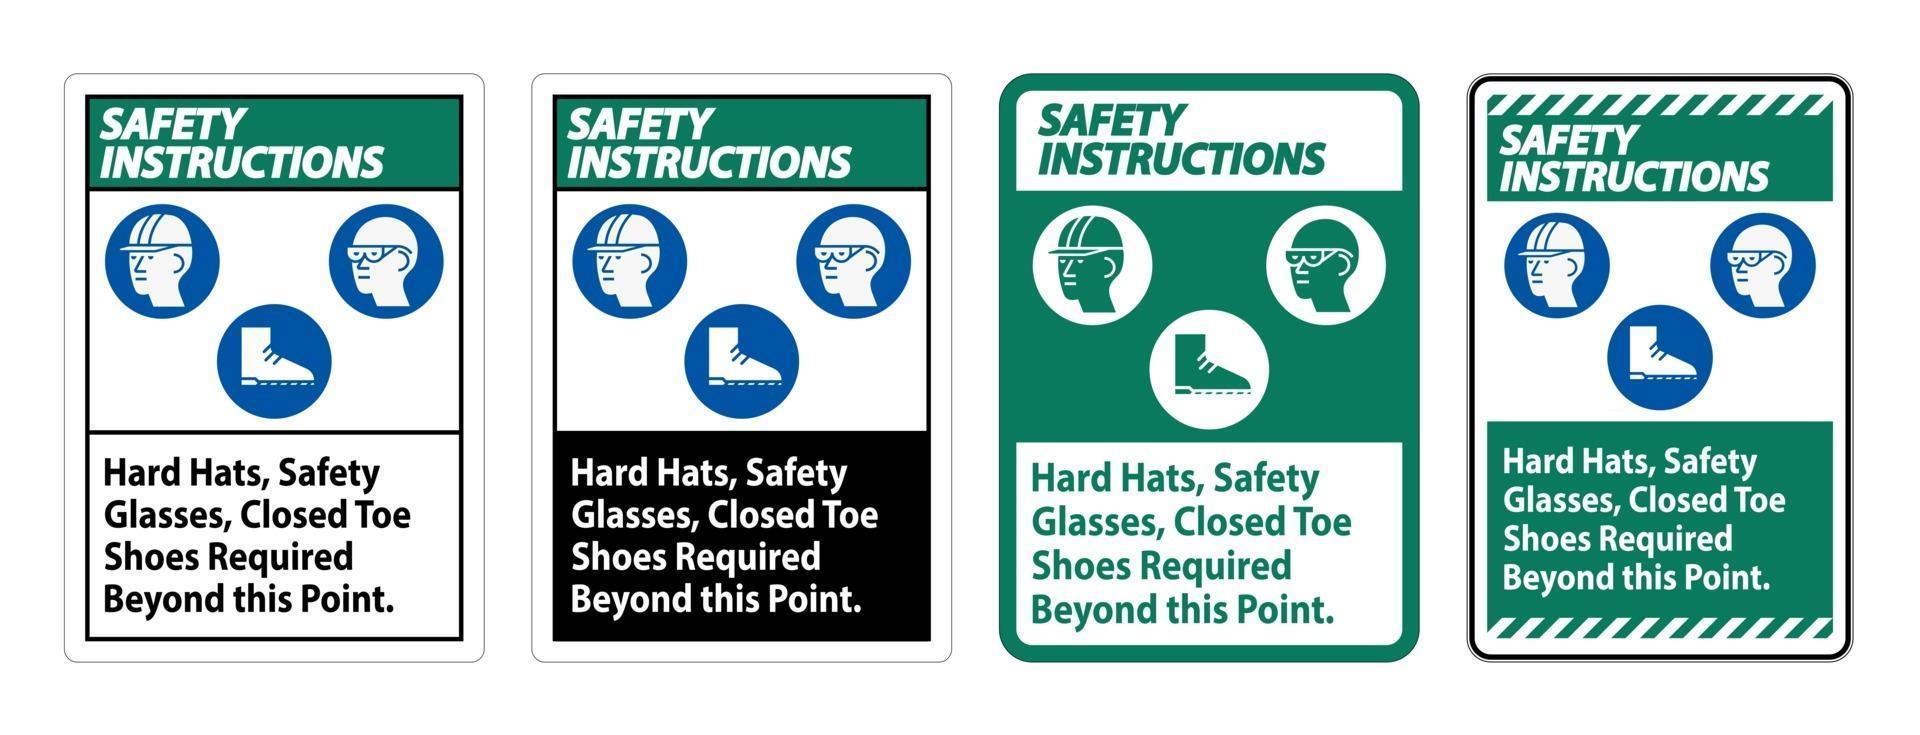 istruzioni di sicurezza firmare elmetti occhiali di sicurezza punta chiusa scarpe obbligatorie oltre questo punto vettore